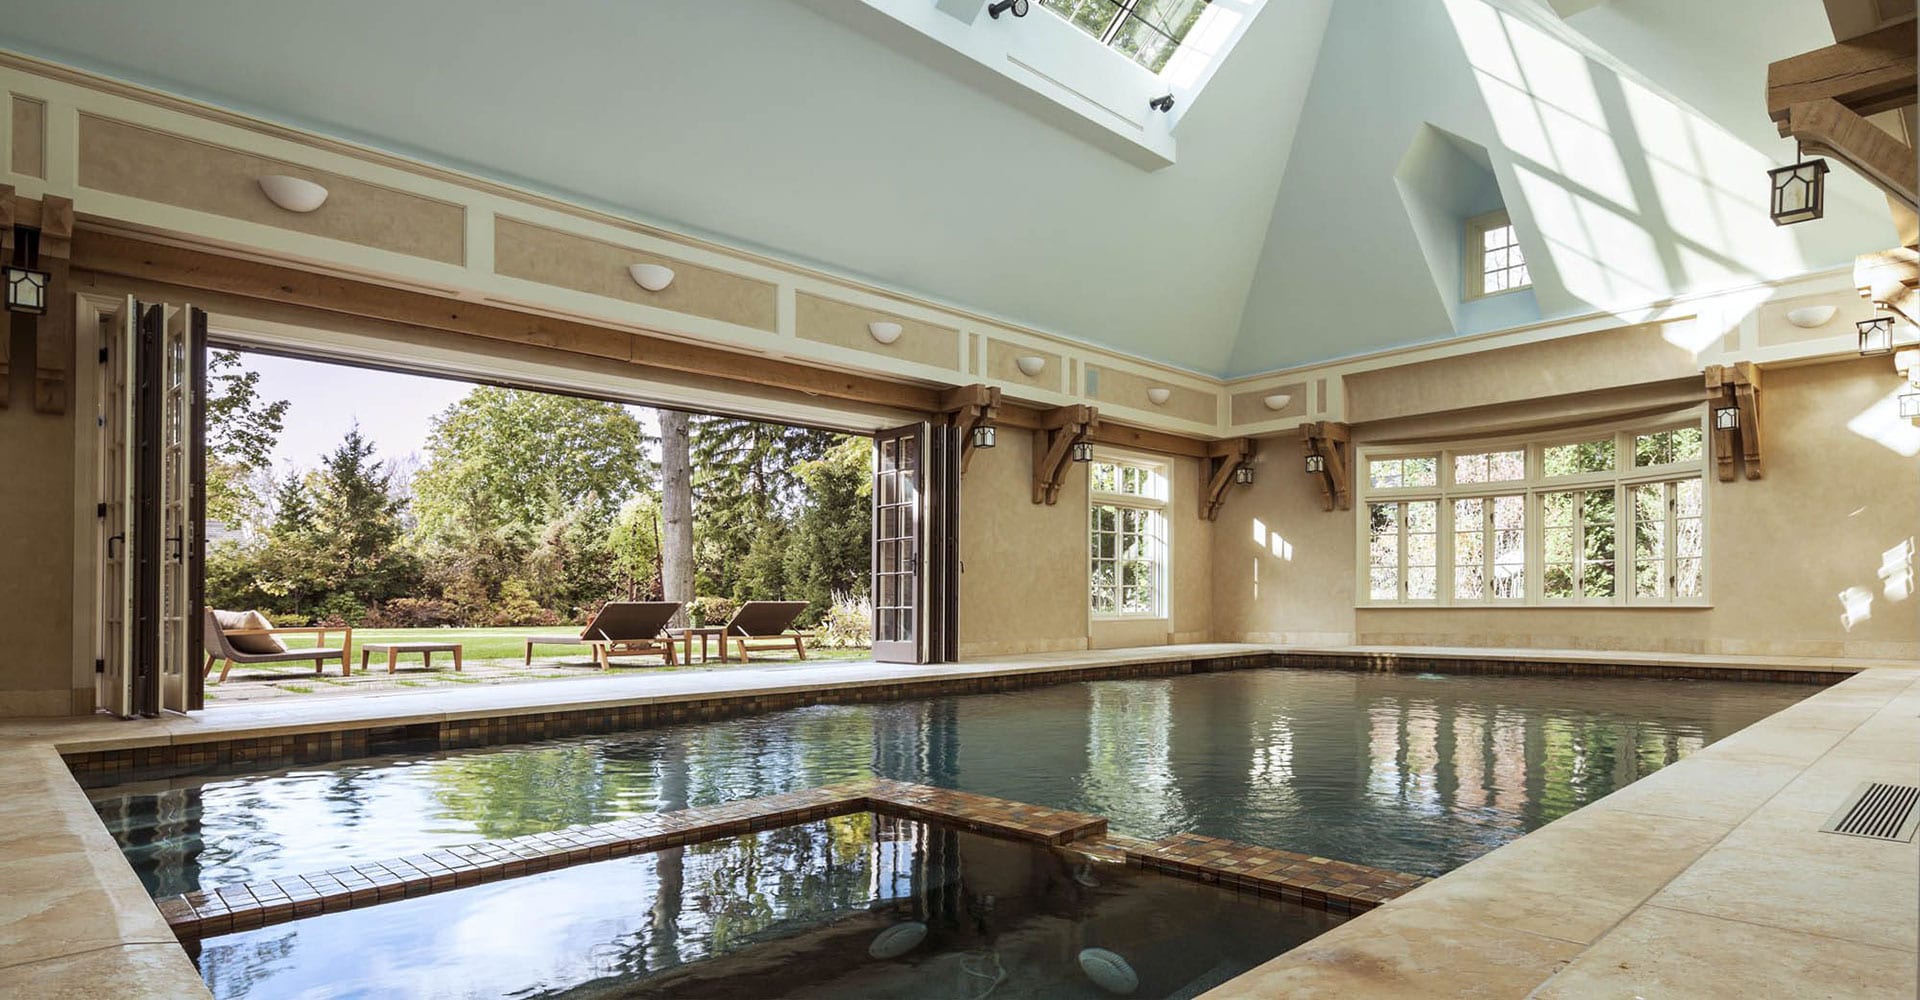 Multi-panel exterior bifold doors open indoor pool to the exterior